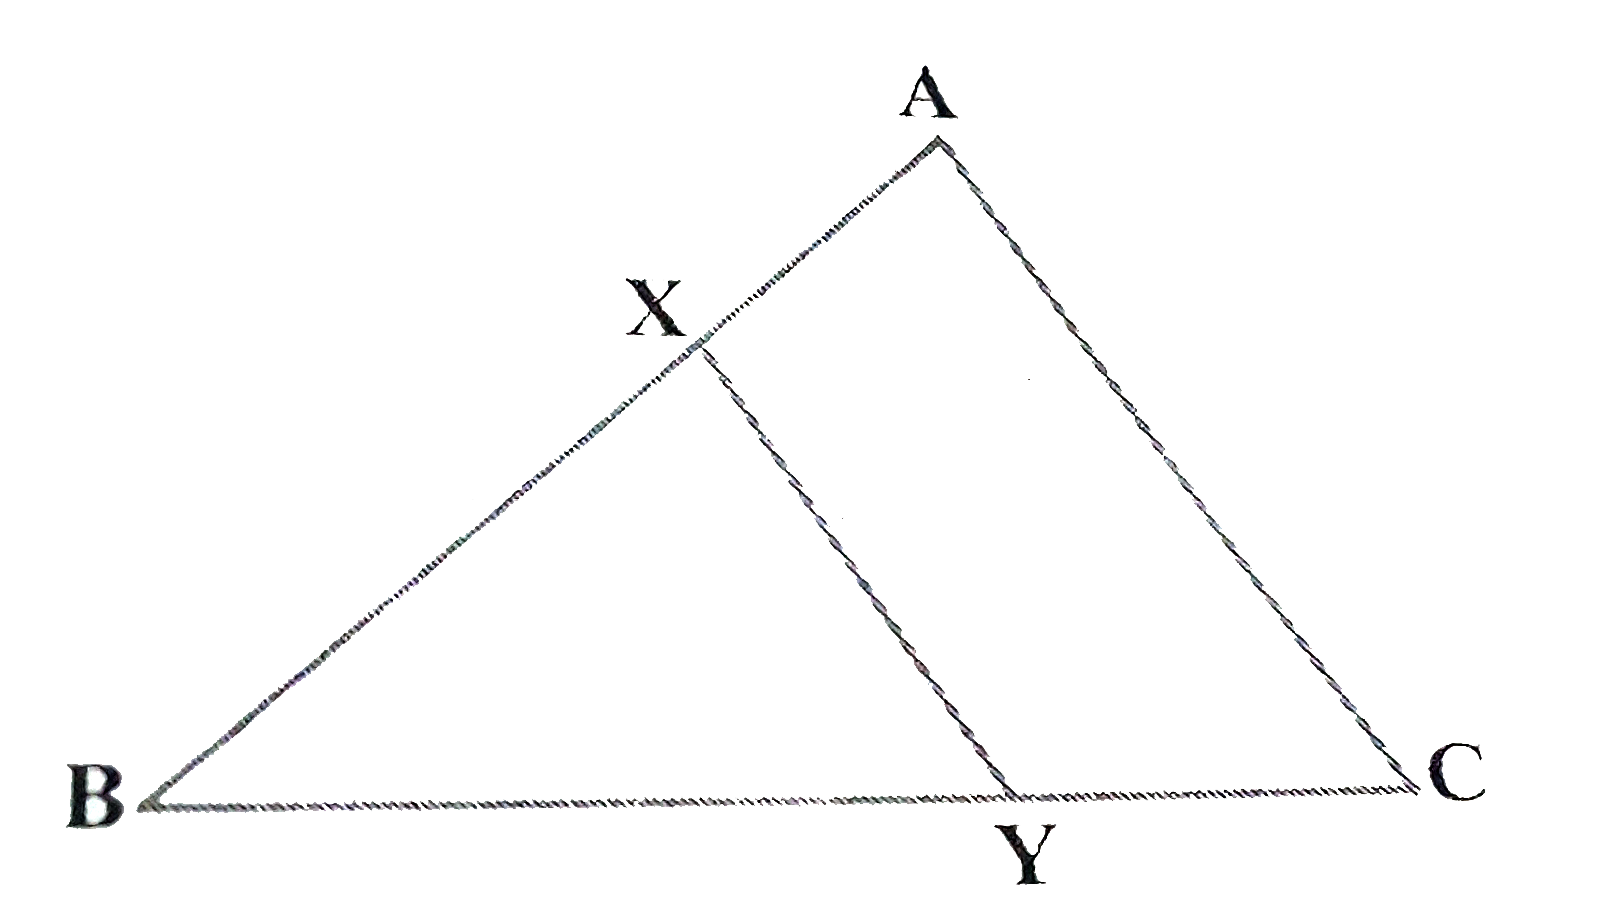 आकृति 6.43 में , रेखाखण्ड XY त्रिभुज ABC की भुजा AC के समान्तर है तथा इस त्रिभुज को वह बराबर क्षेत्रफलों वाले दो भागो में विभाजित करता है । अनुपात (AX)/(AB) ज्ञात कीजिए